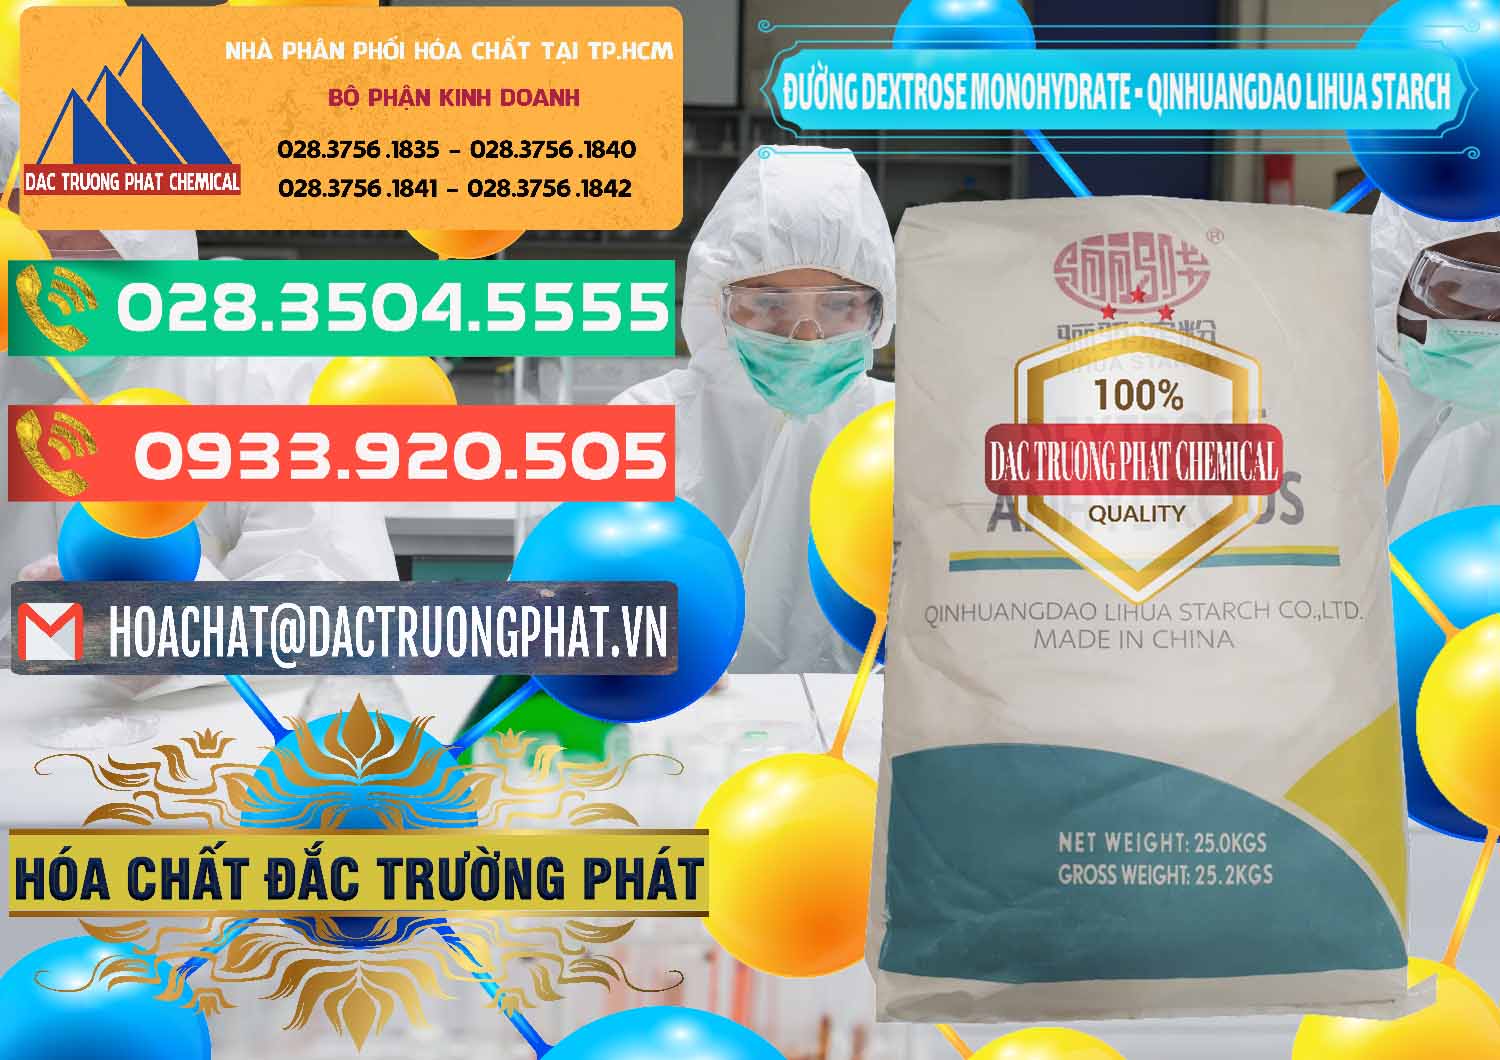 Đơn vị chuyên phân phối _ bán Đường Dextrose Monohydrate Food Grade Qinhuangdao Lihua Starch - 0224 - Cty chuyên kinh doanh & cung cấp hóa chất tại TP.HCM - congtyhoachat.com.vn